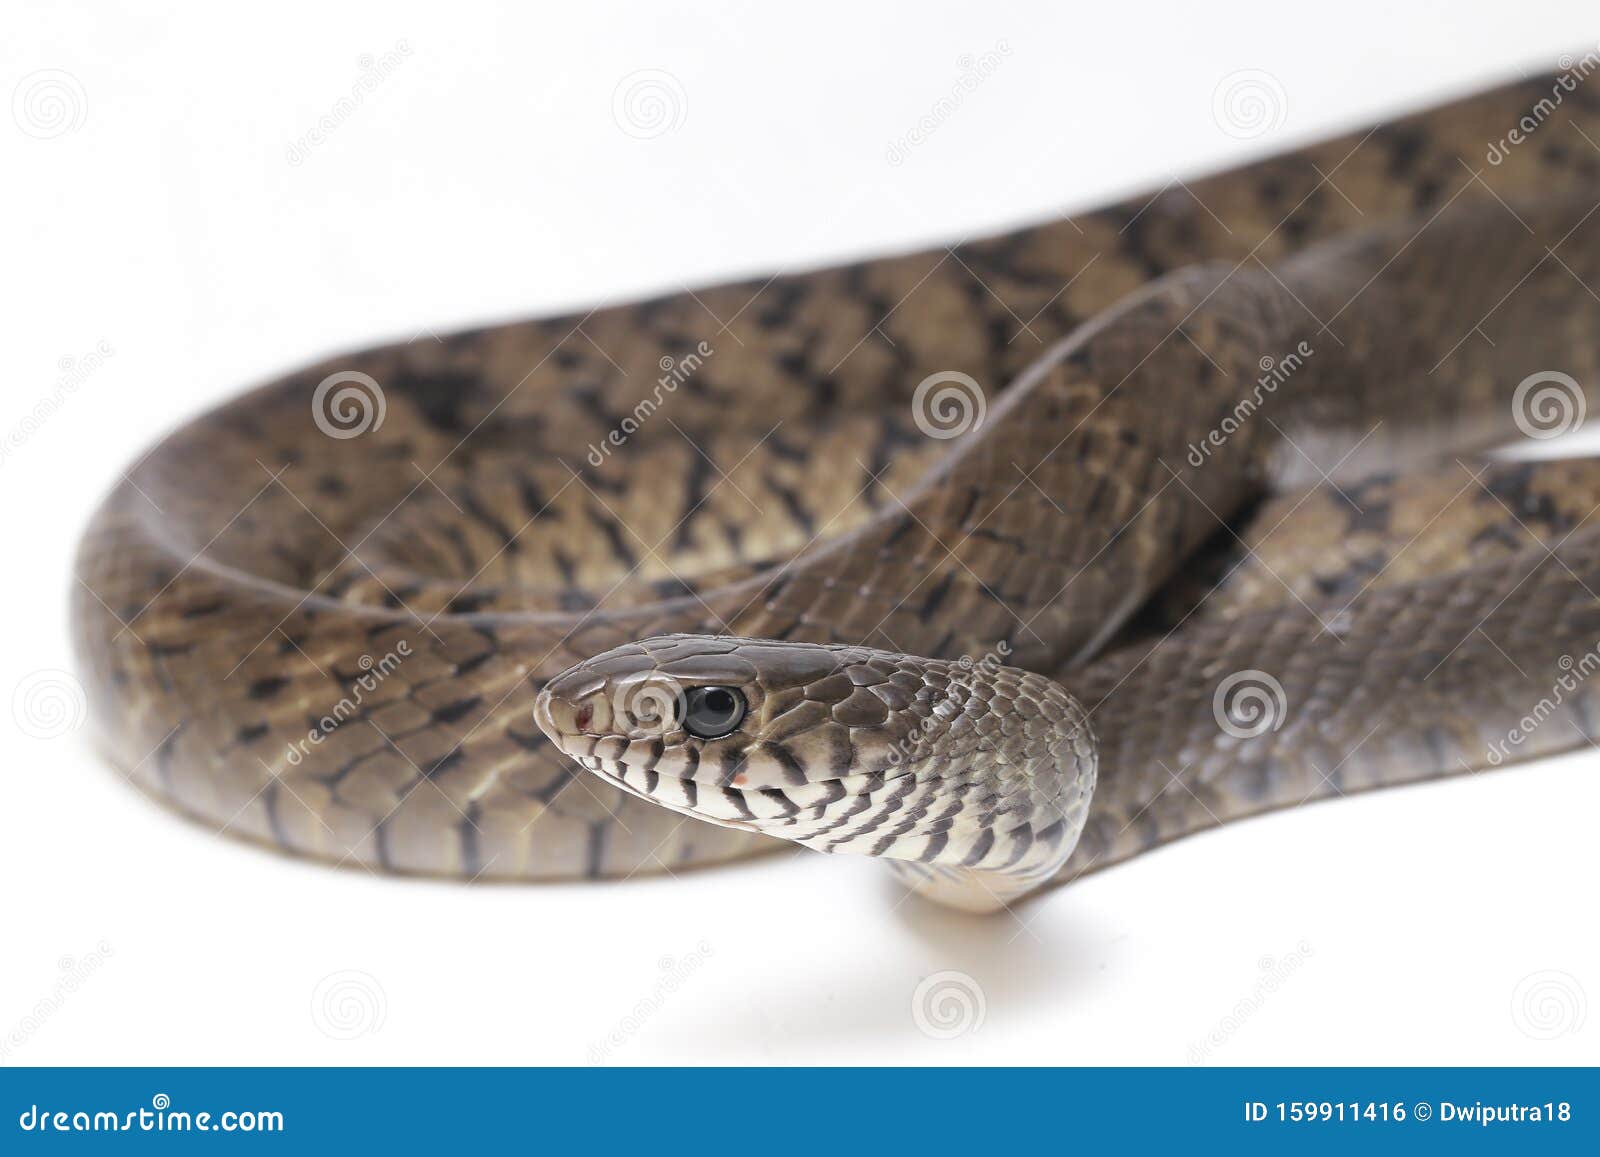 印度白鼠蛇 一种常见于苏特地区的皱纹蛇库存照片 图片包括有印度白鼠蛇 一种常见于苏特地区的皱纹蛇